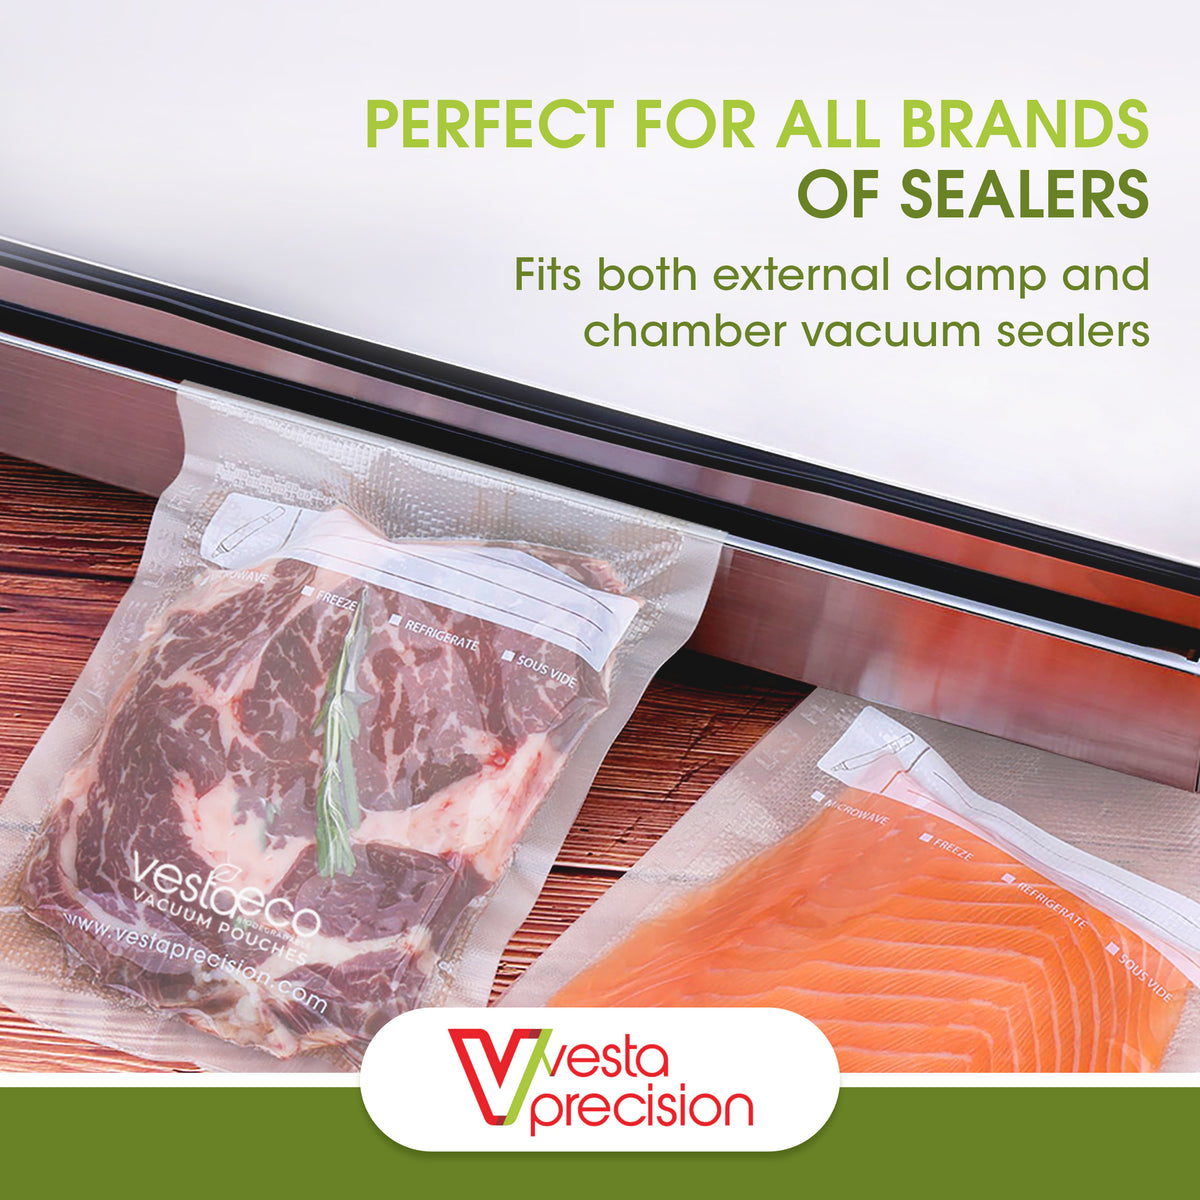 Freezer Vacuum Seal Bags - Sous Vide Bags